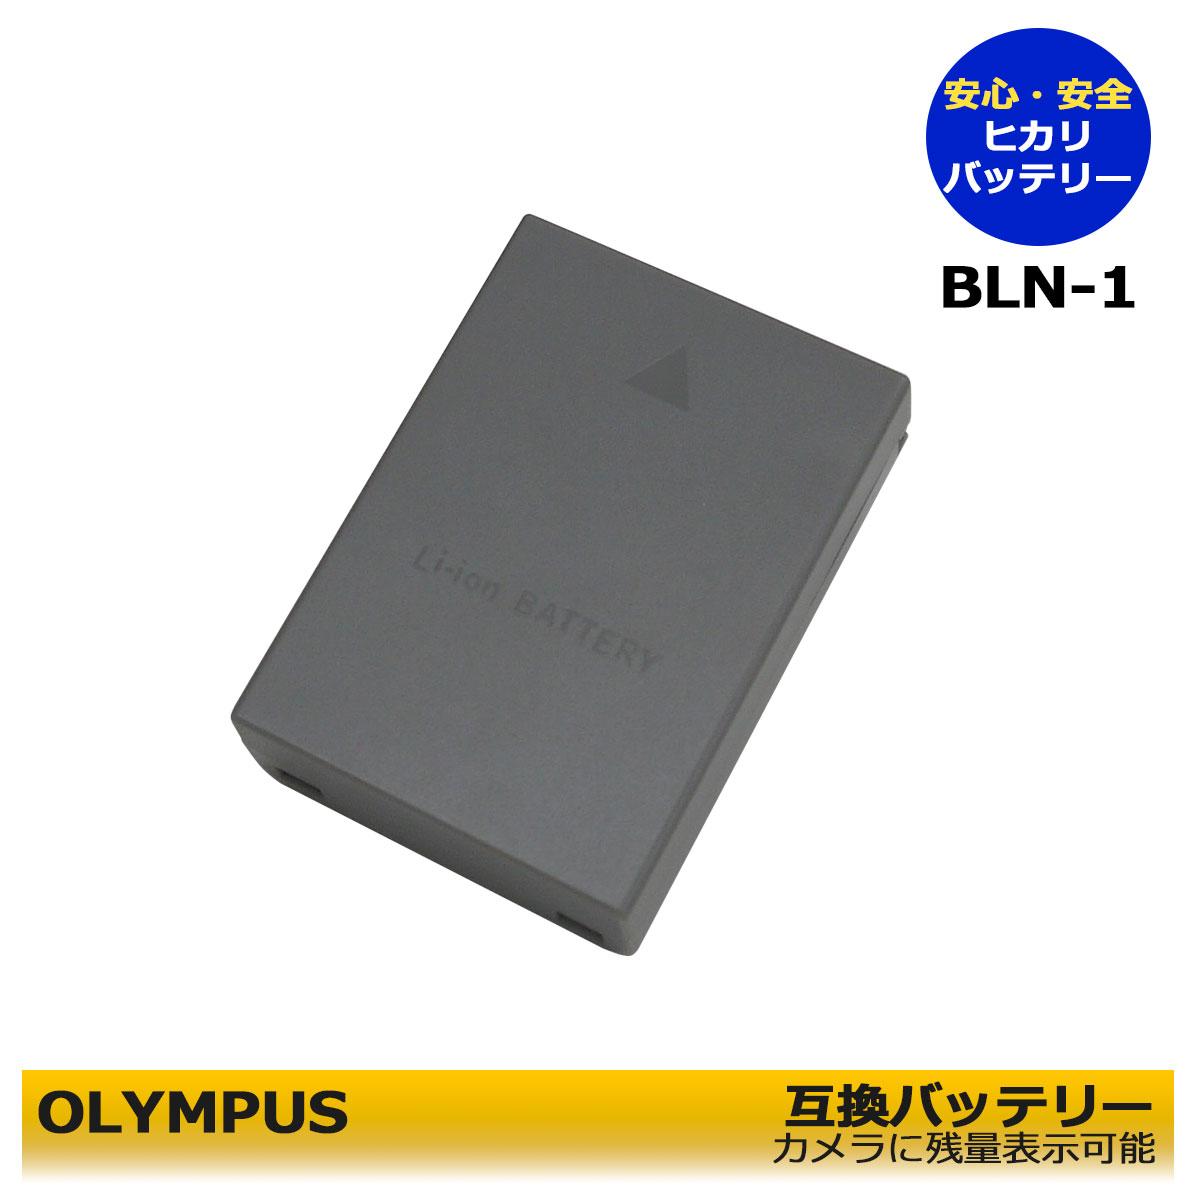 BLN-1 【あす楽対応】OLYMPUS オリンパ